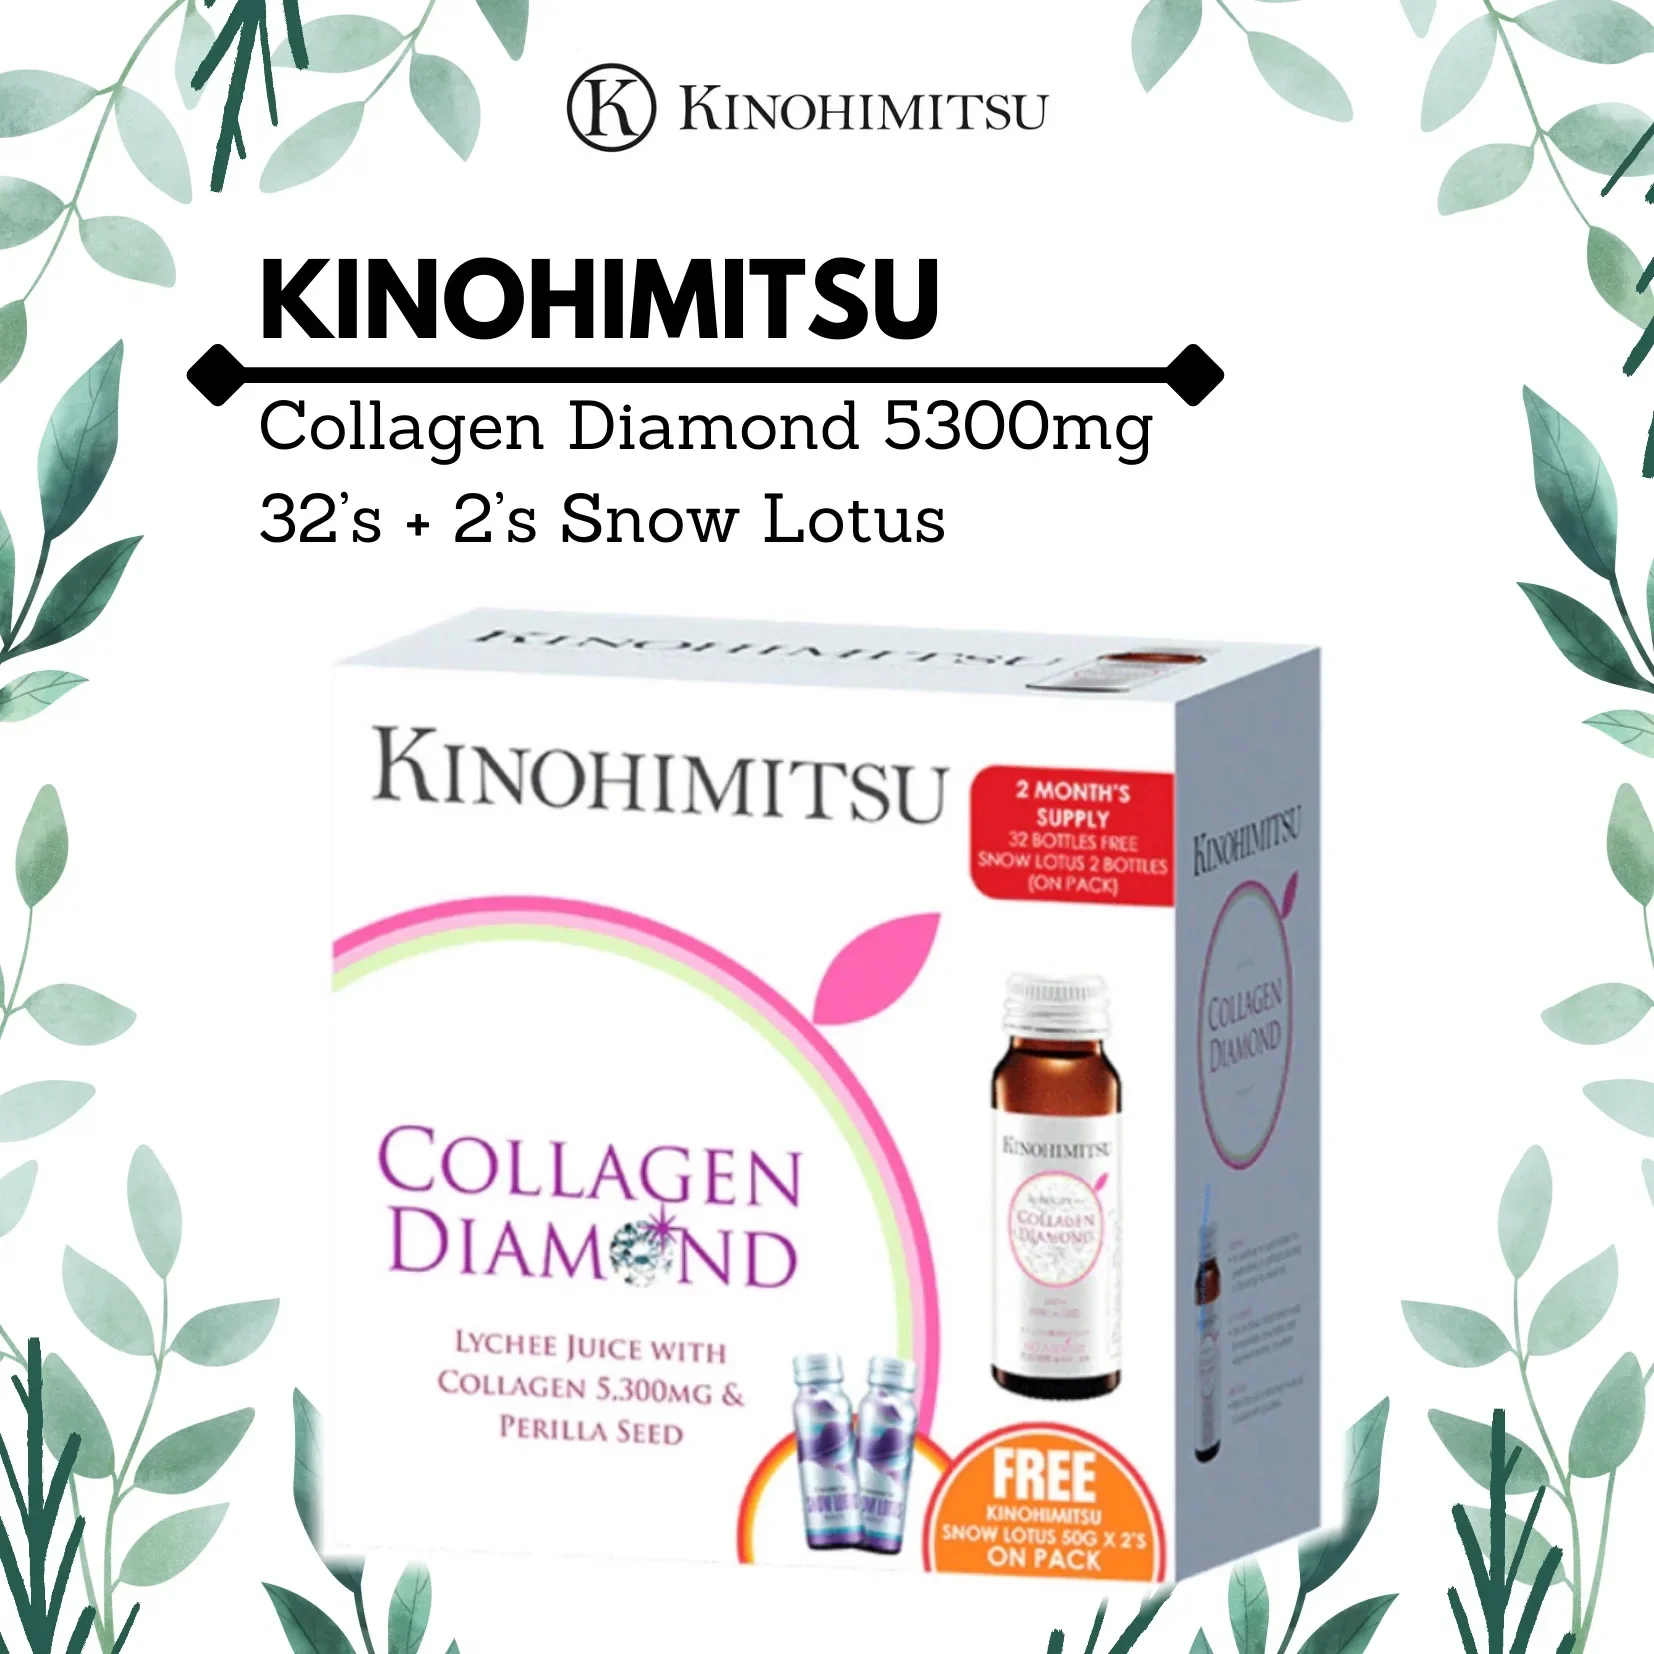 Kinohimitsu Collagen Diamond 5300mg 32’s + 2’s Snow Lotus